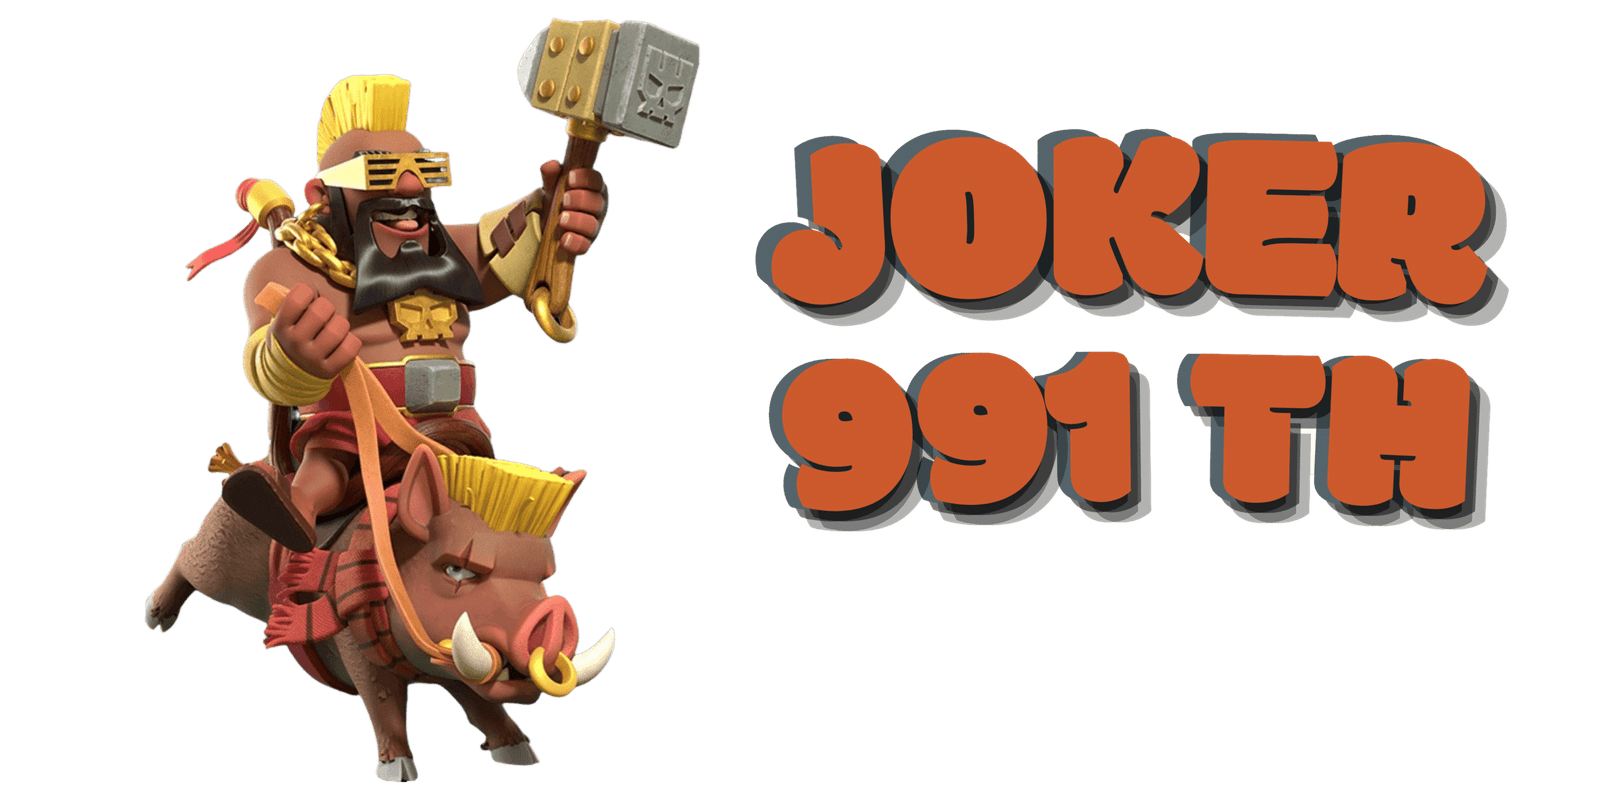 joker991-th-logo-2